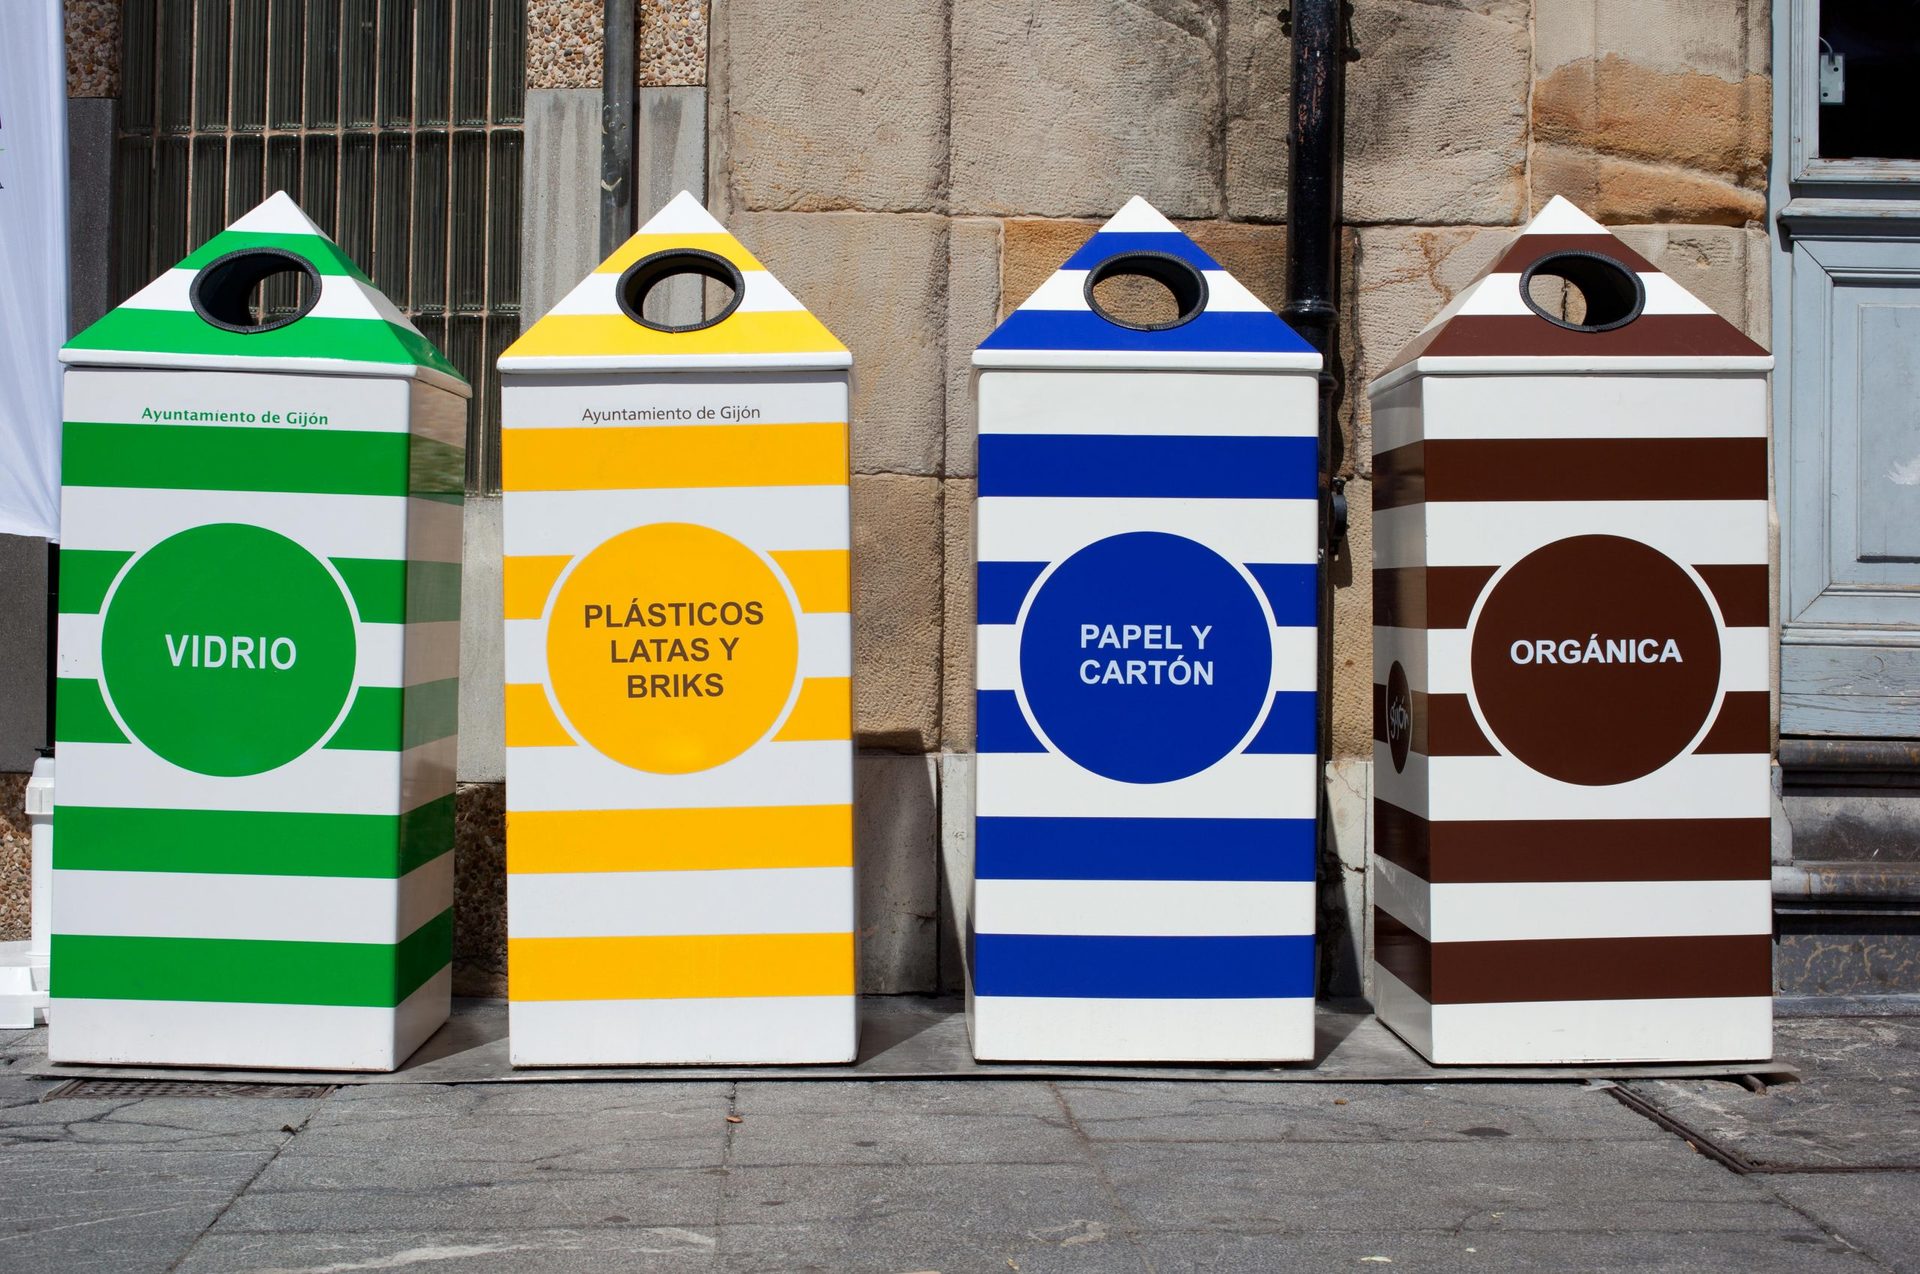 La gestió regional de residus a Espanya